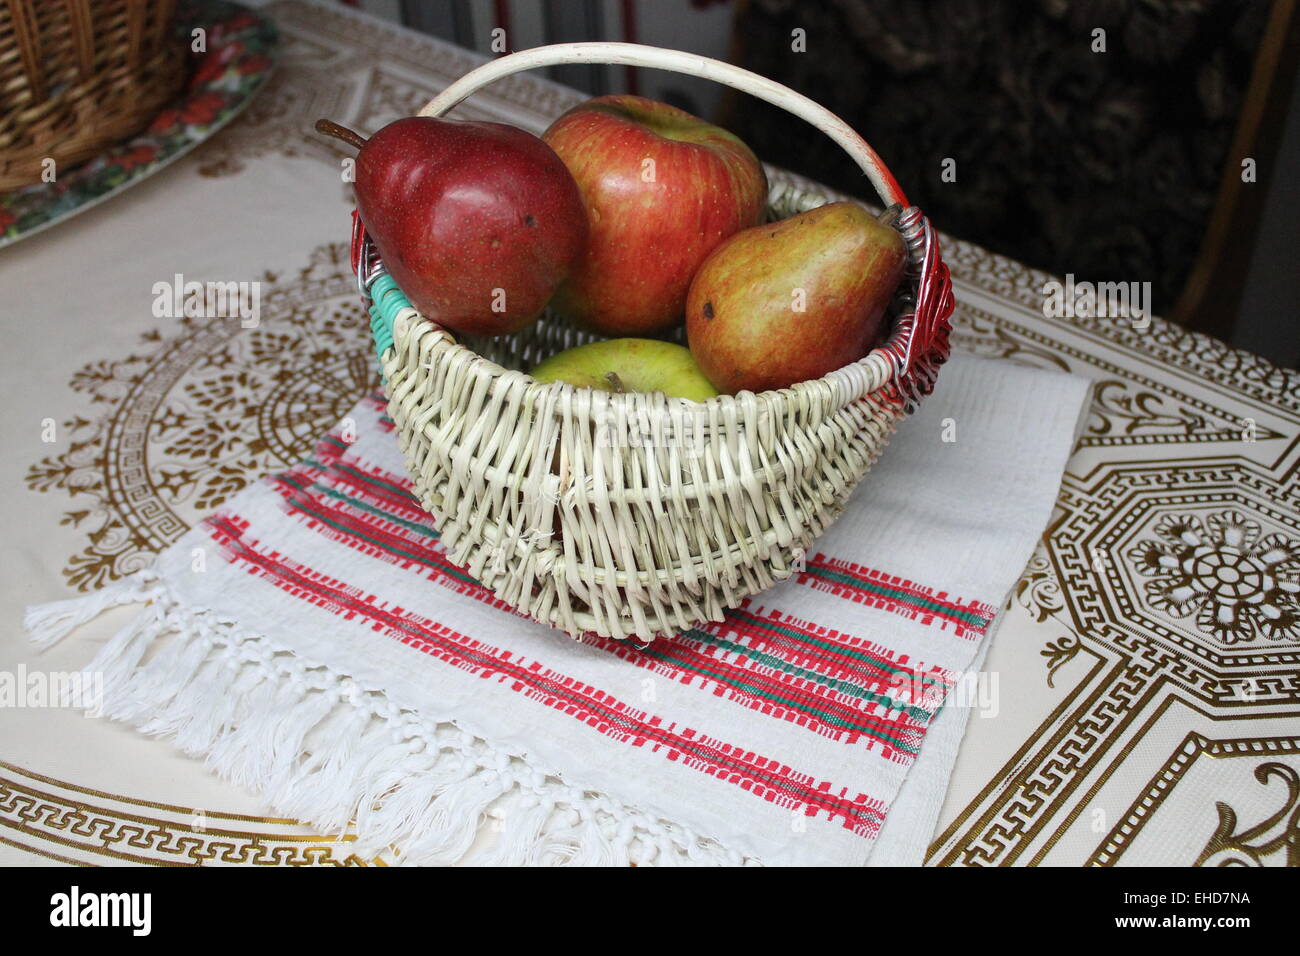 Stuzzicanti red sorta di giardino delle mele e pere nel cestello di ricamo asciugamano Foto Stock